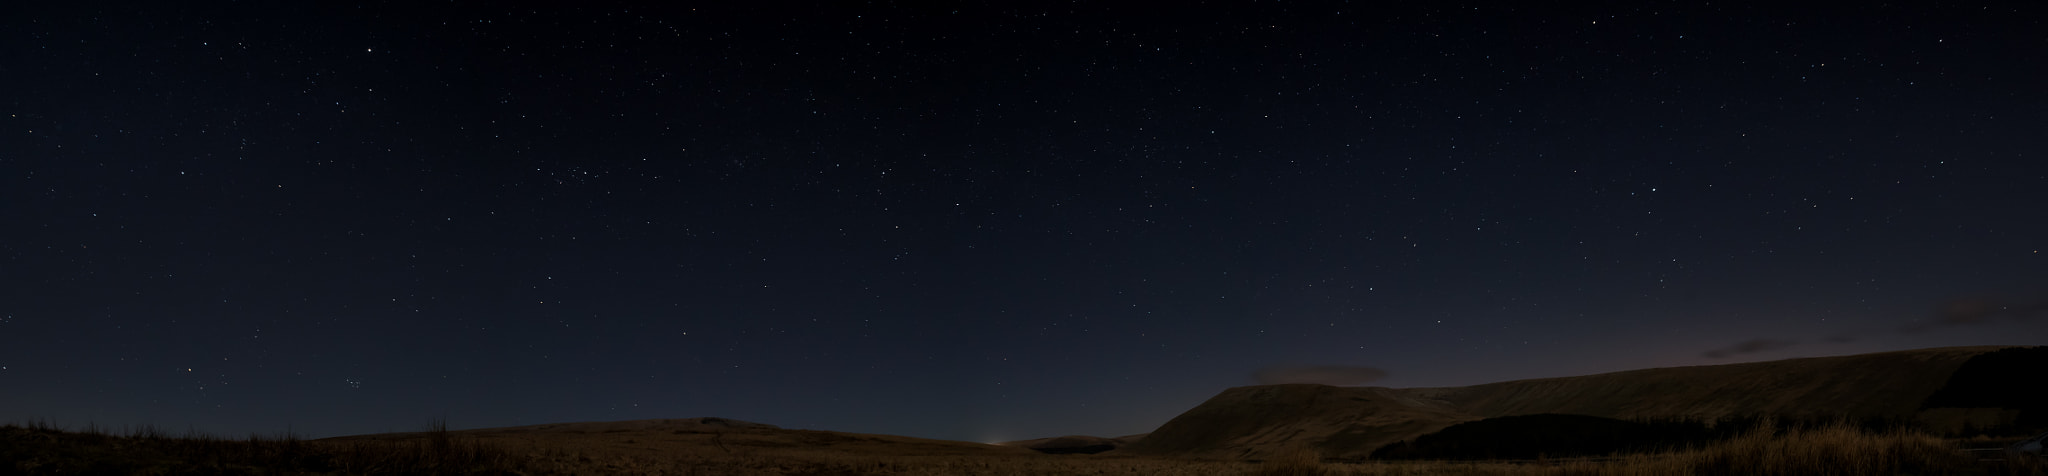 Nikon D750 + Tamron AF 18-200mm F3.5-6.3 XR Di II LD Aspherical (IF) Macro sample photo. Night sky panoramic photography